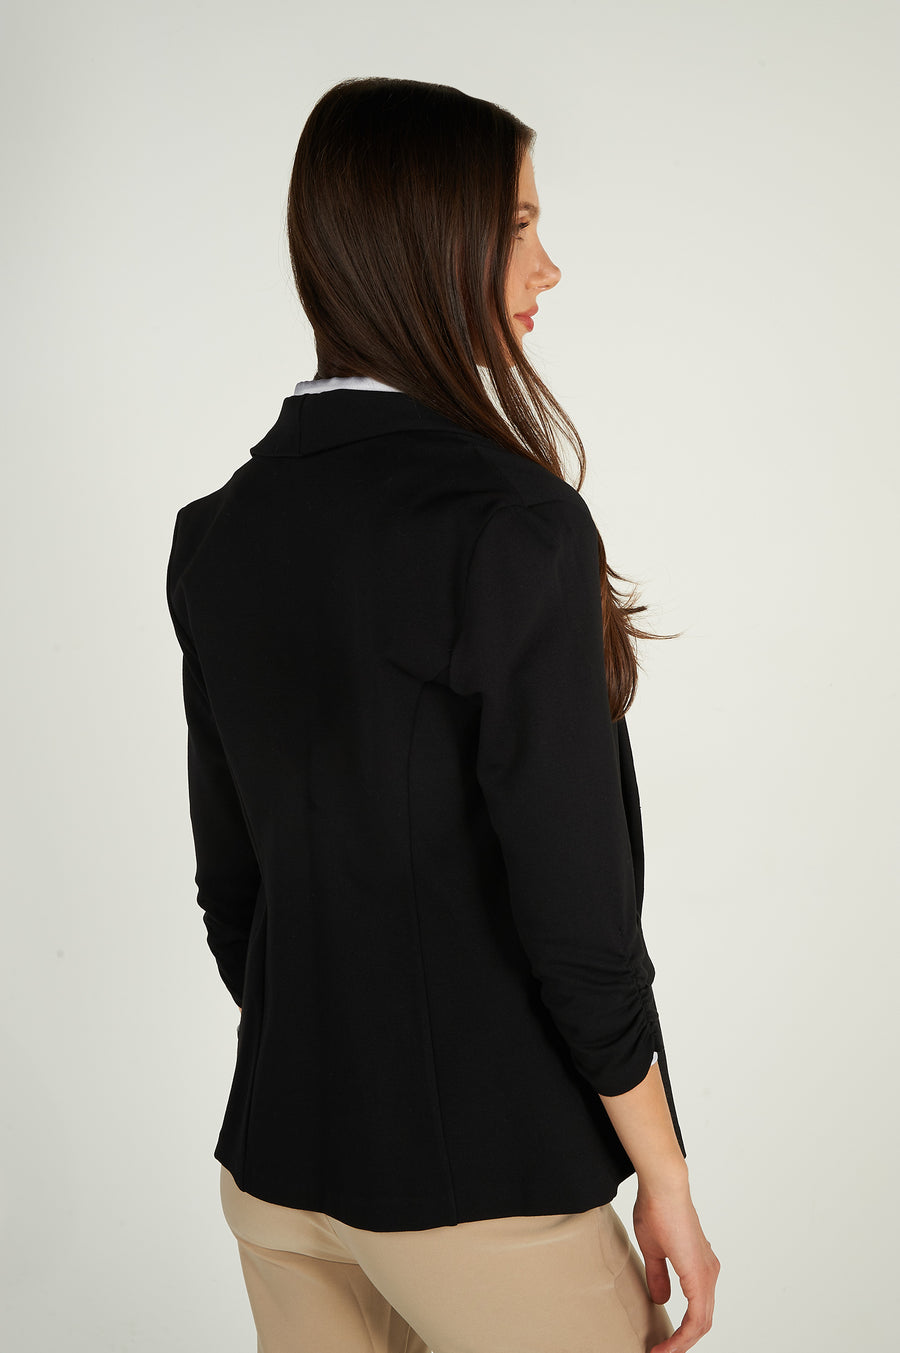 magasinez le blazer pour femme de chez colori - Shop this blazer for women from colori